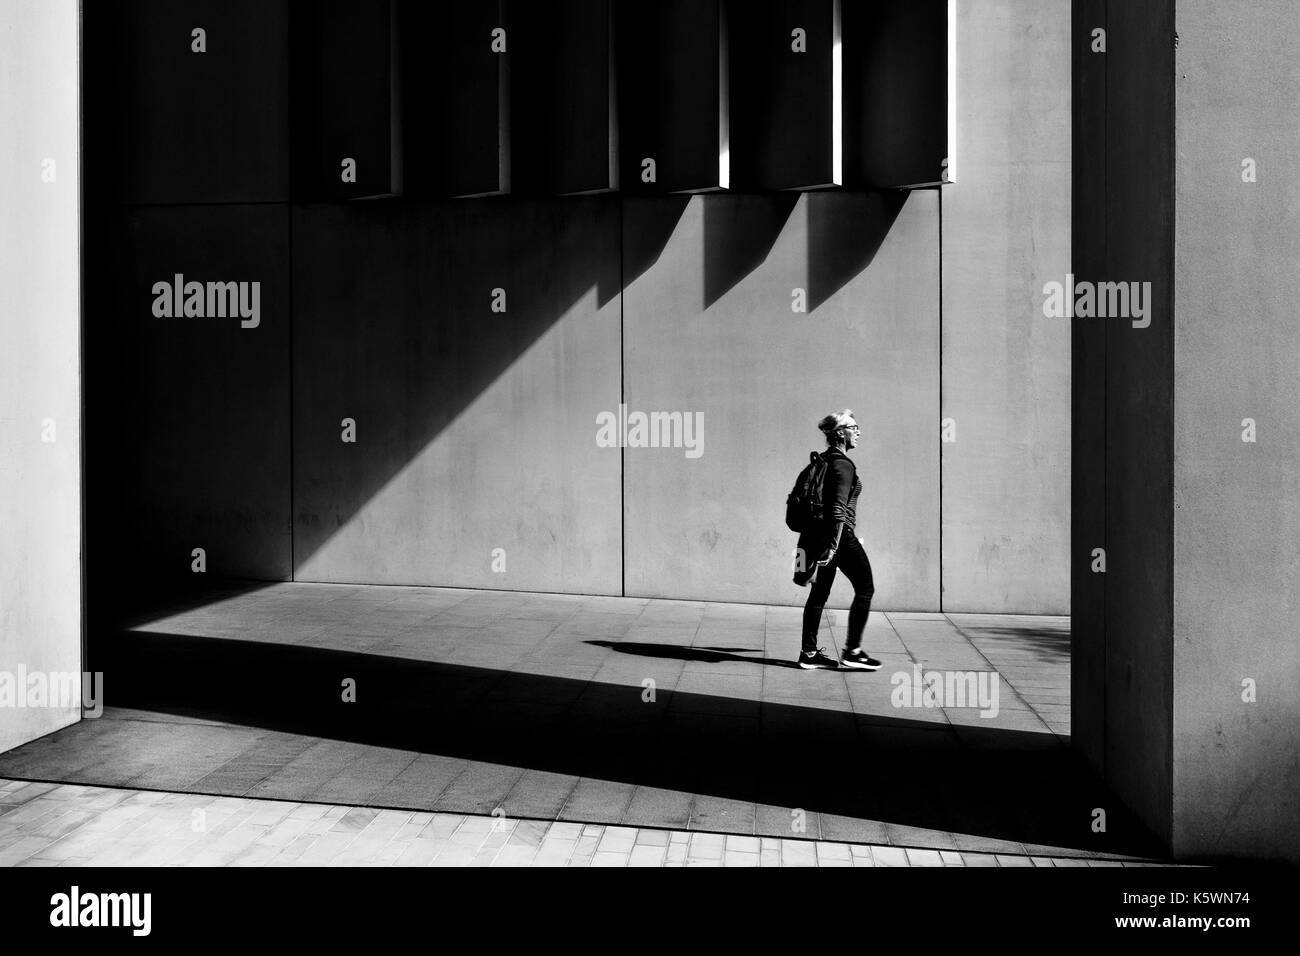 Londres noir et blanc photographie de rue : ombre et lumière dans l'environnement urbain contemporain, London, UK Banque D'Images